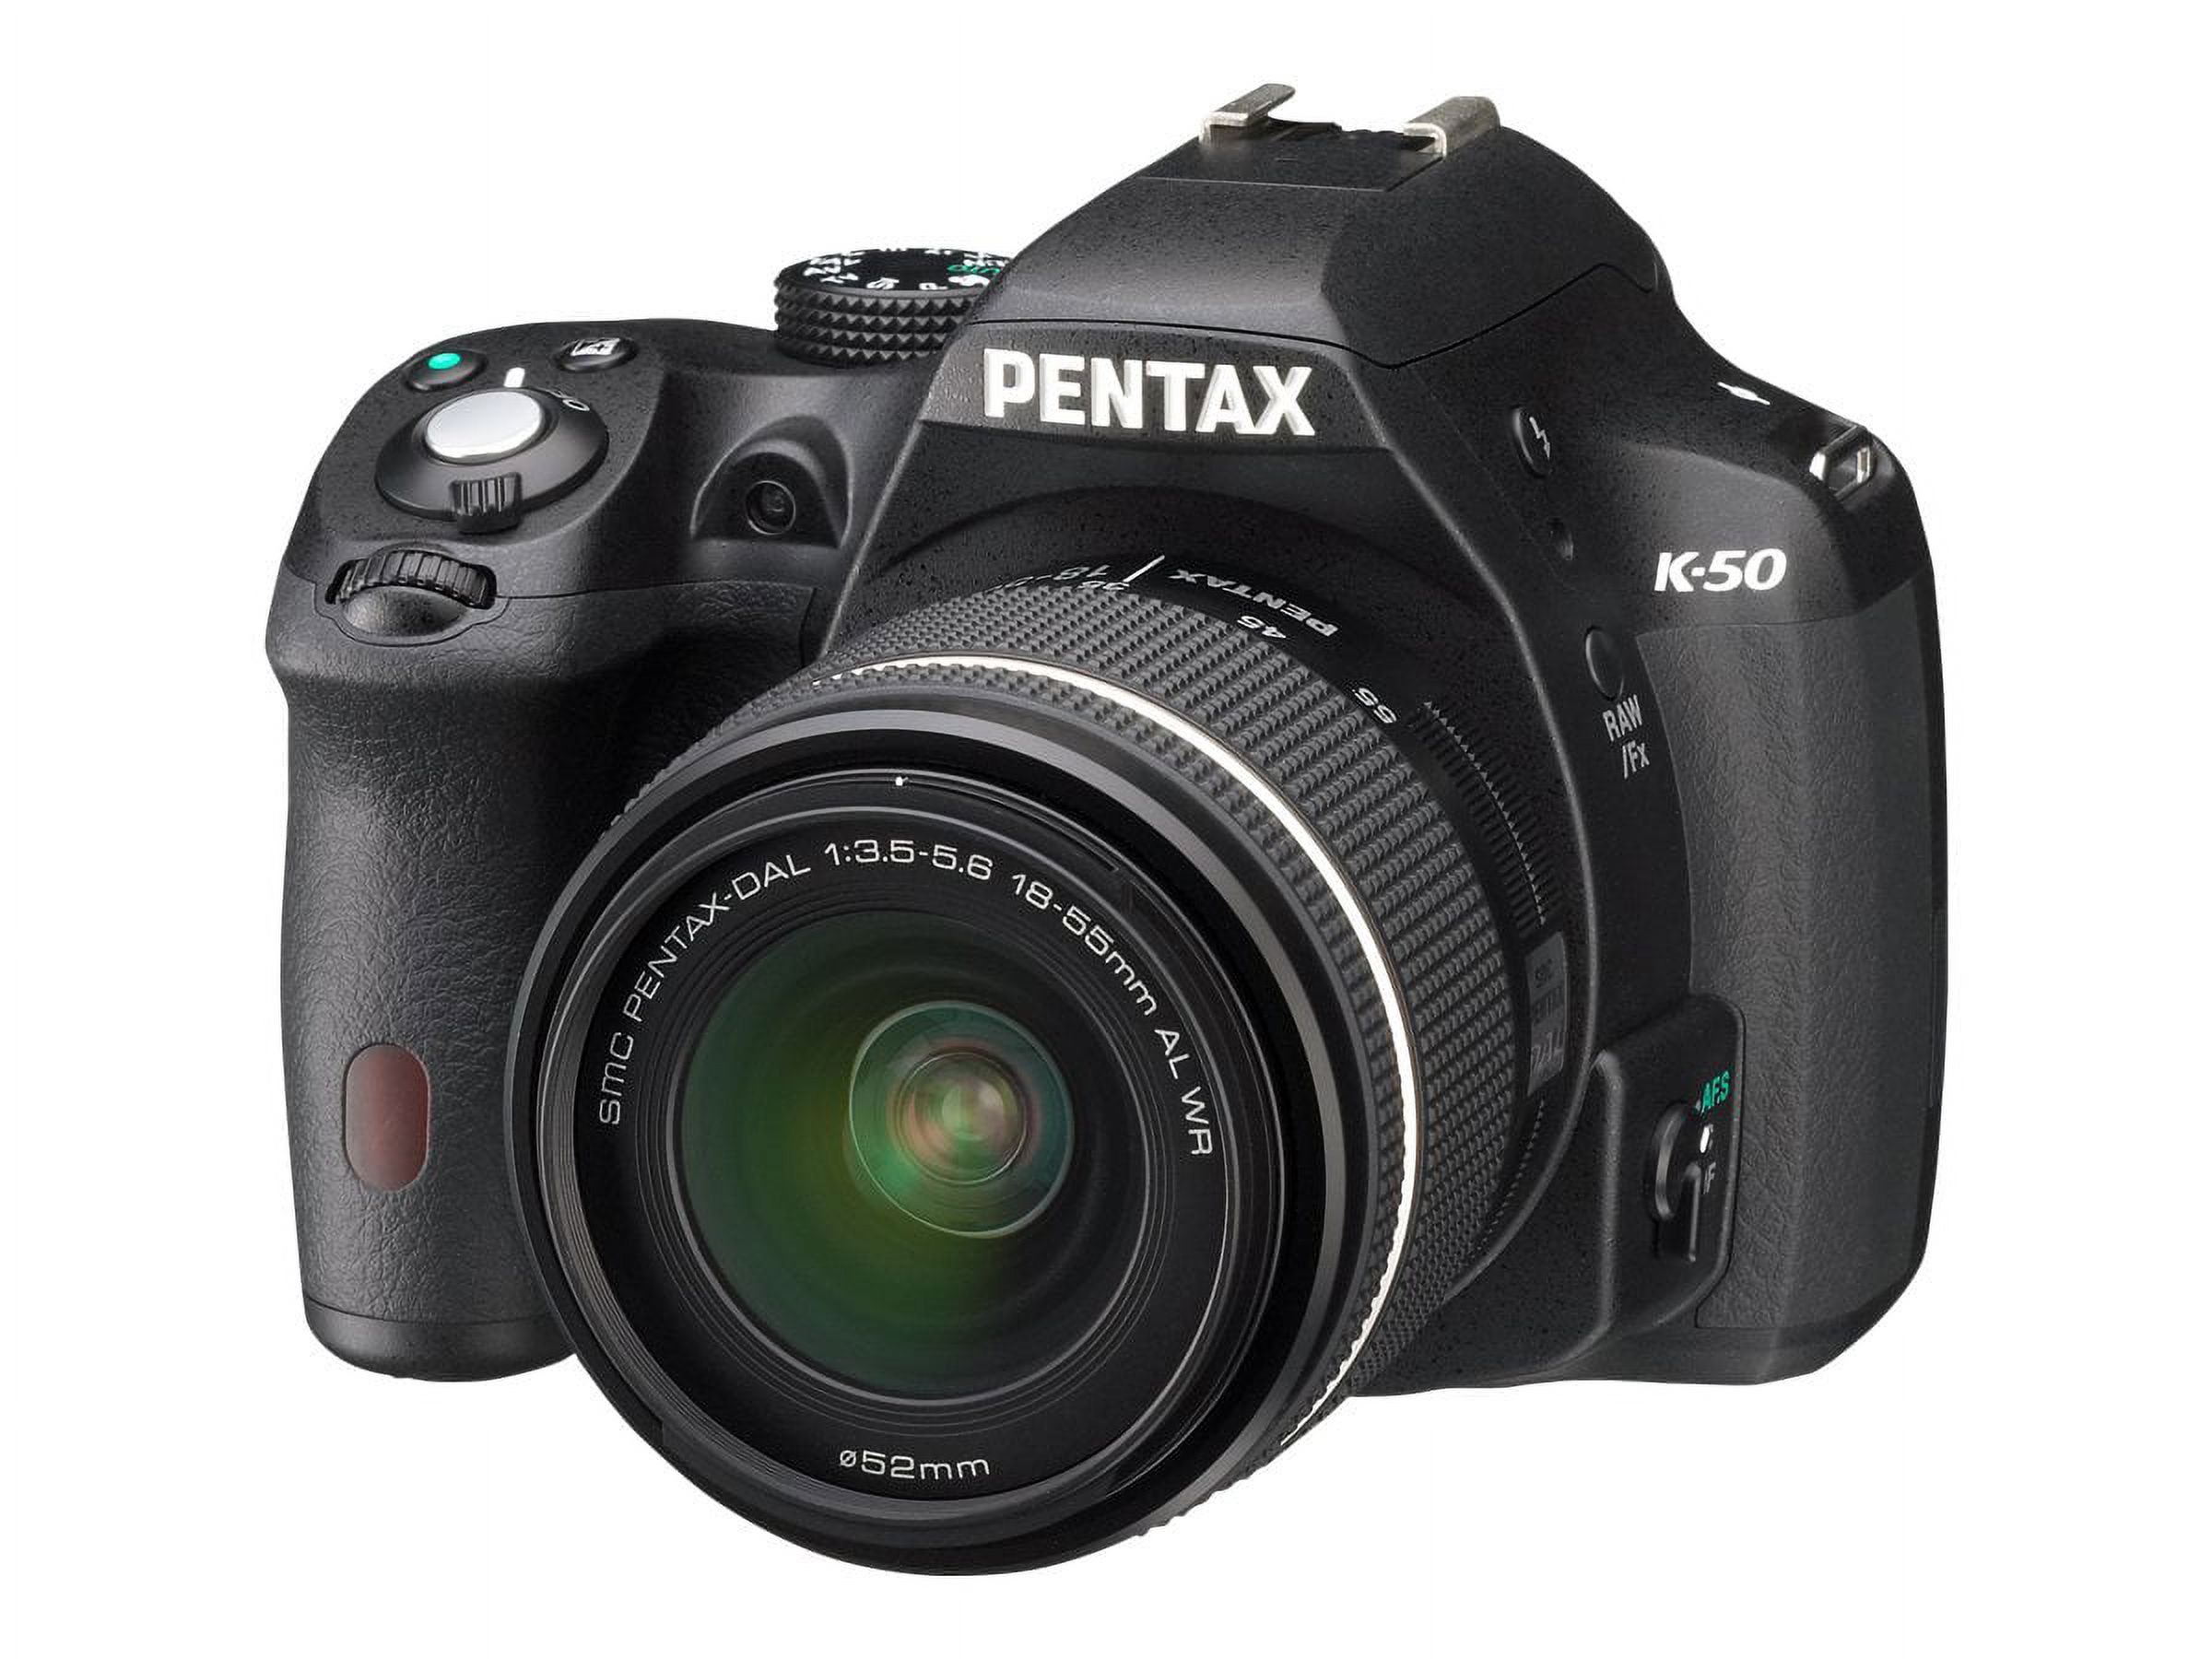 Pentax K-50 16.3 Megapixel Digital SLR Camera Body Only, Black - image 3 of 11